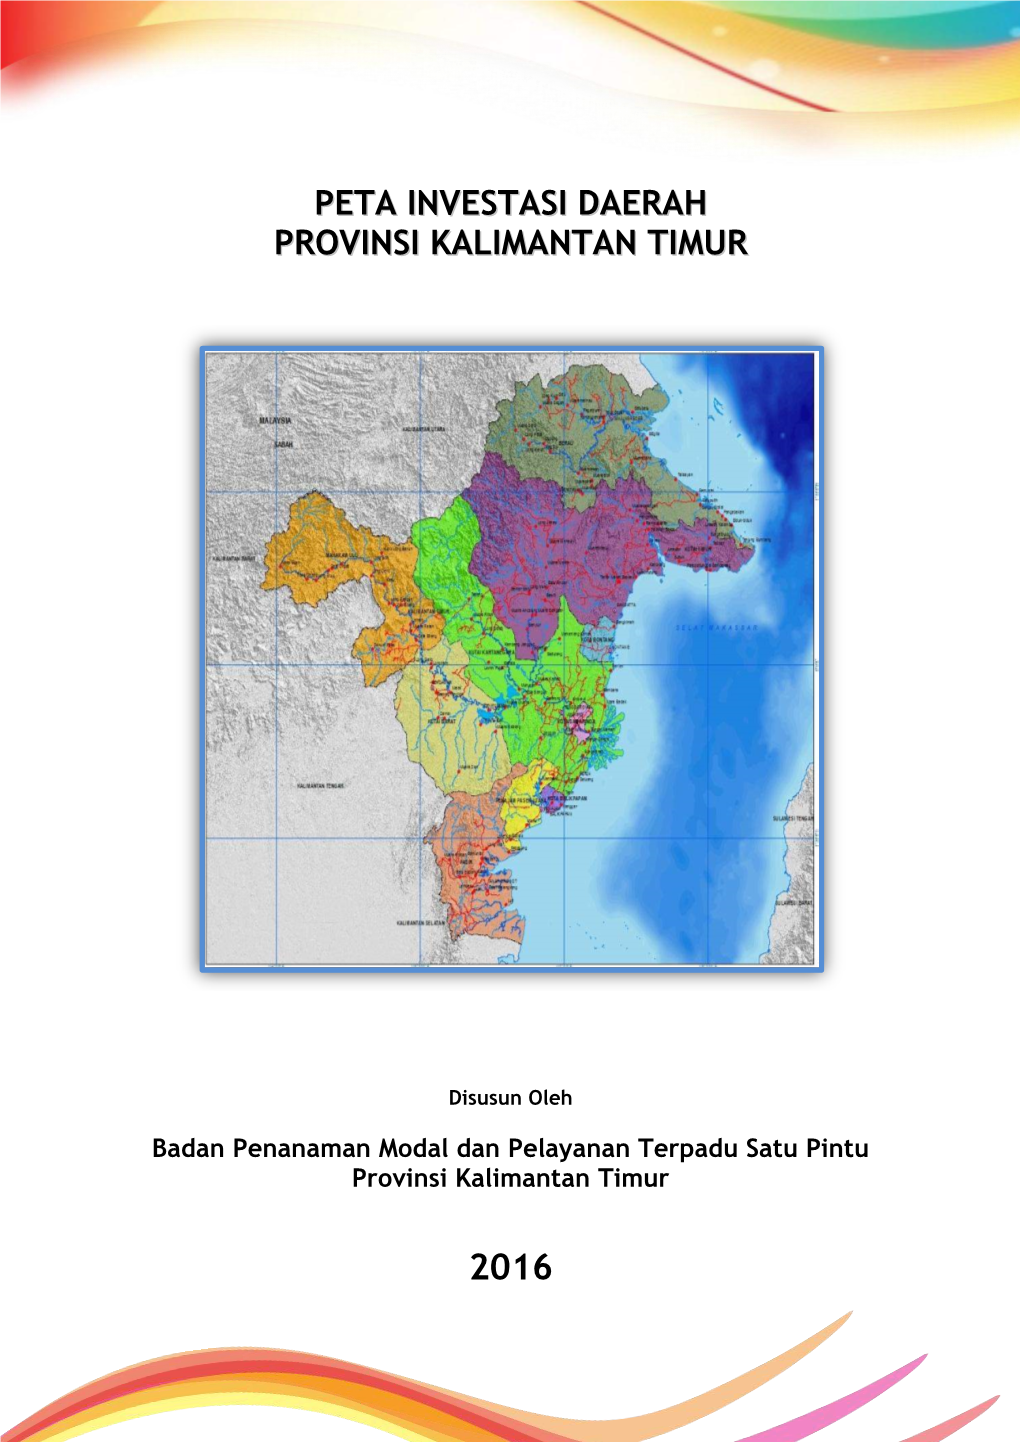 Peta Investasi Daerah Provinsi Kalimantan Timur